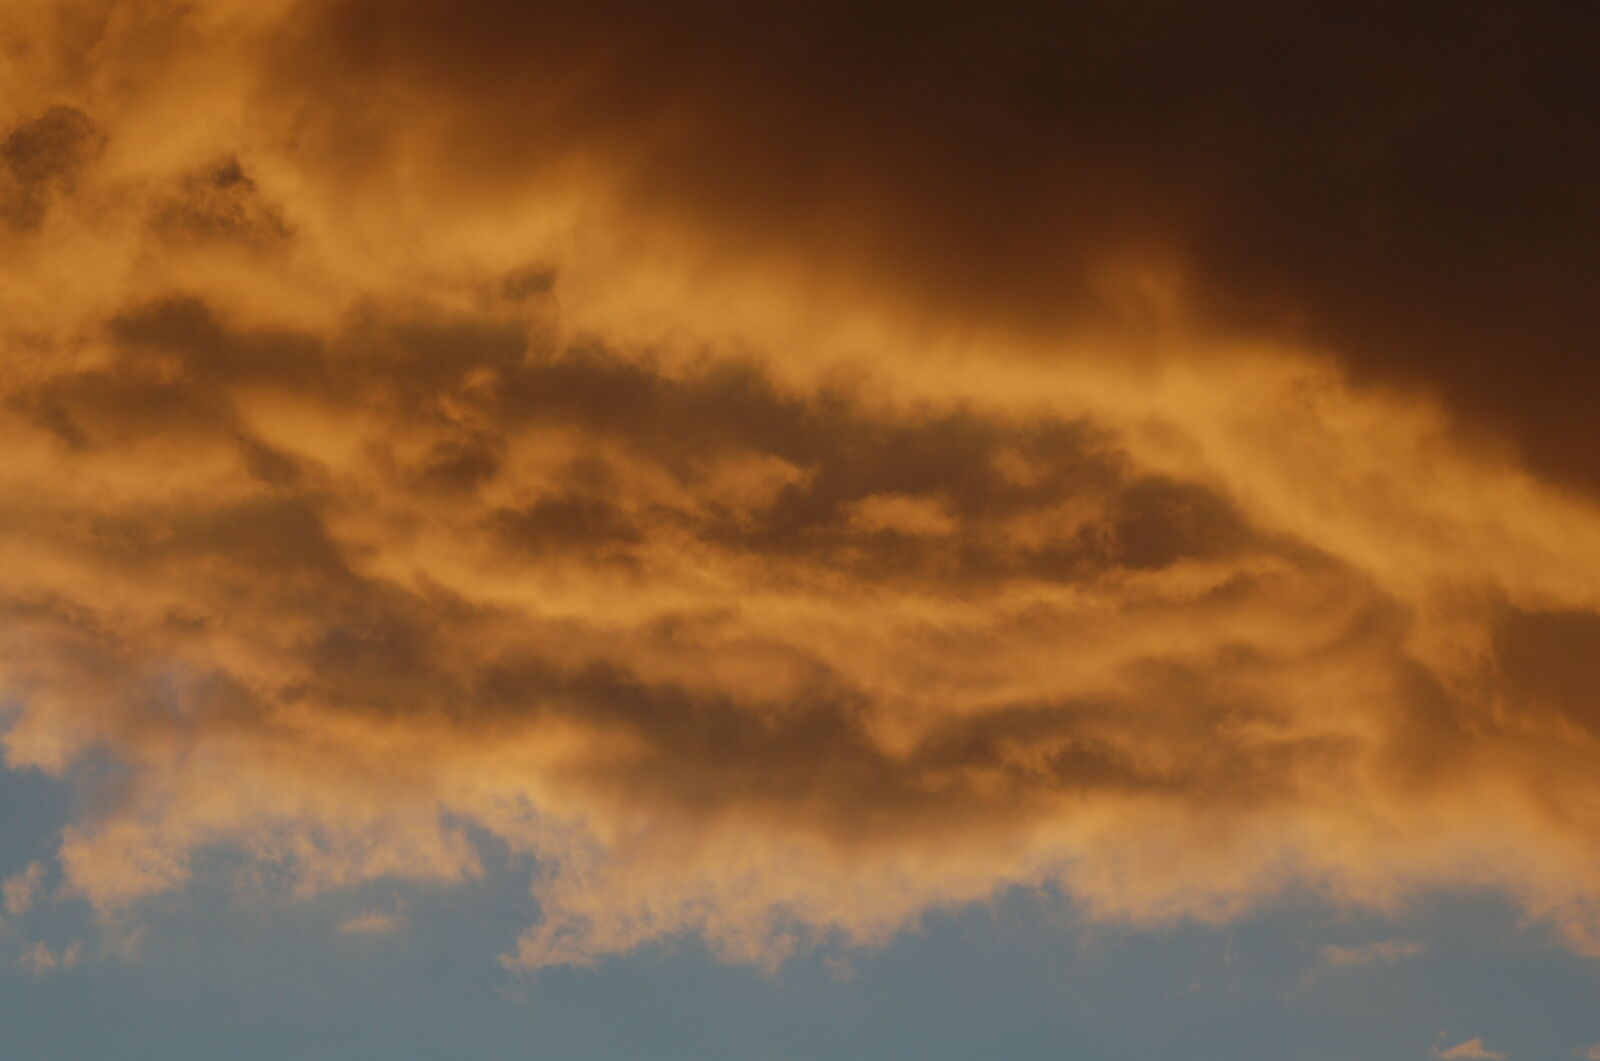 Nikon AF Nikkor 70-300mm F4-5.6G sample photo. Cloud, sky, sunset photography